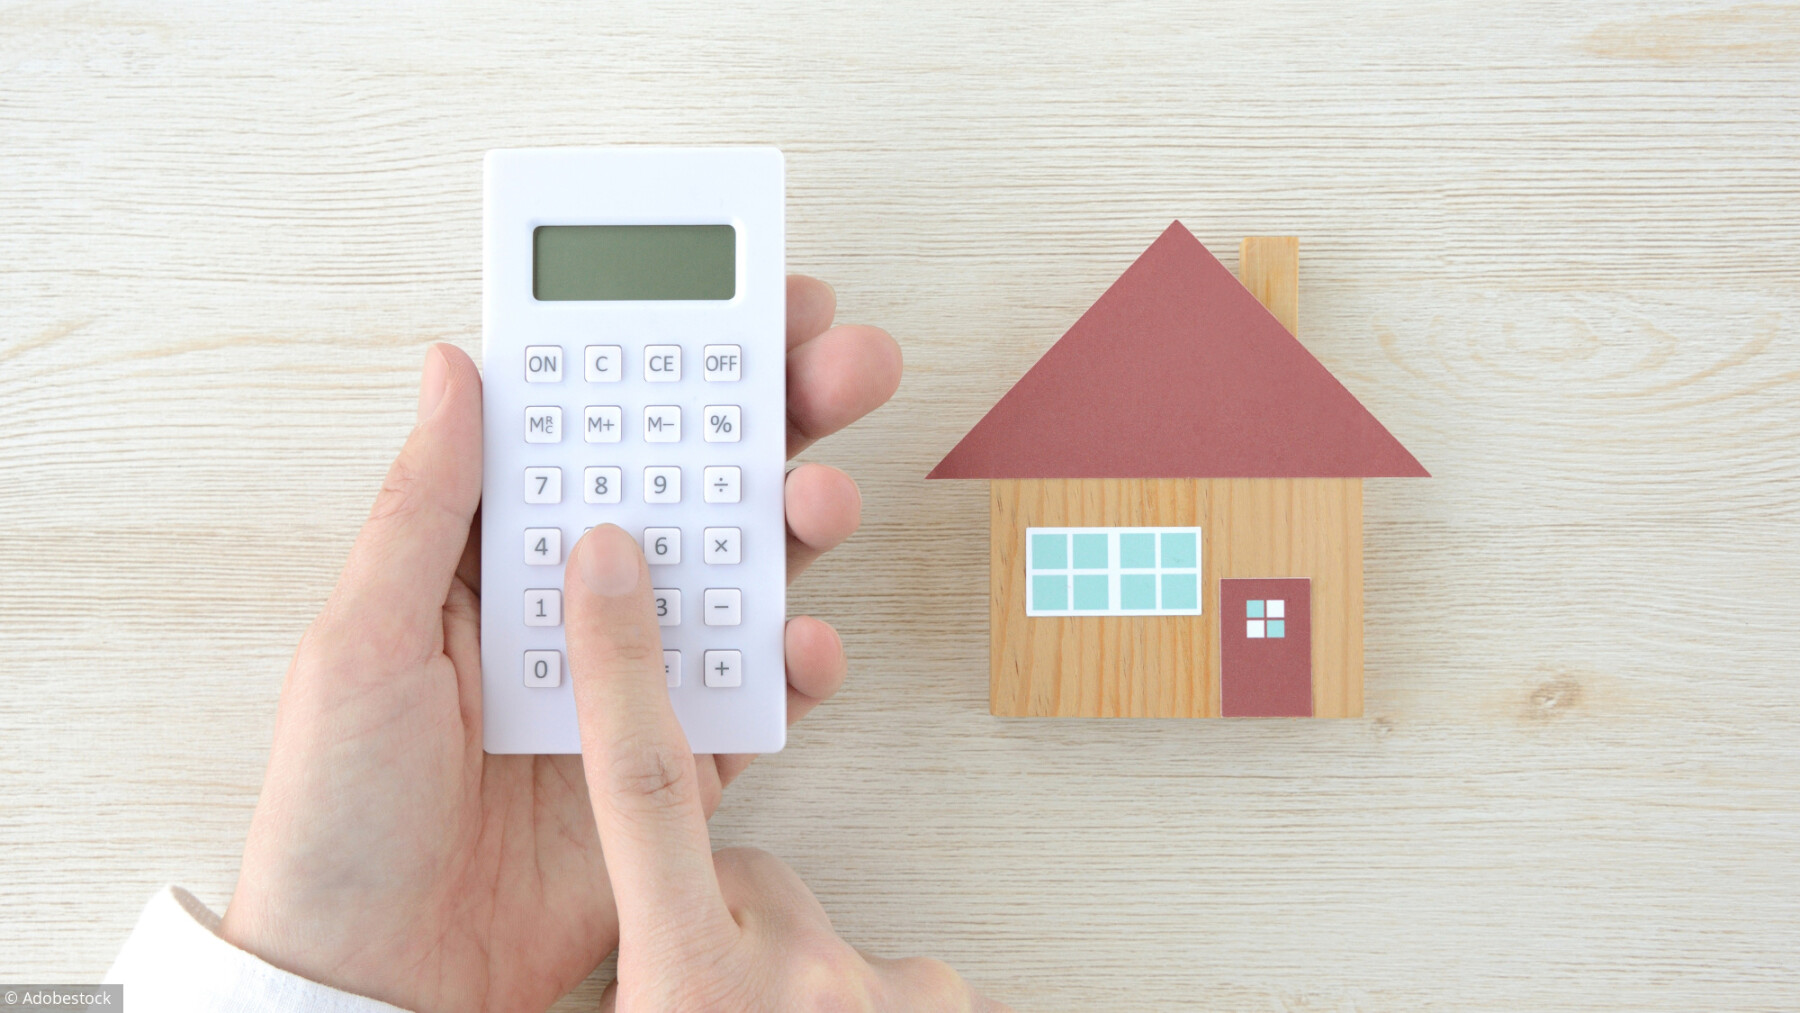 Taxe foncière, taxe d'habitation: comment sont-elles calculées?